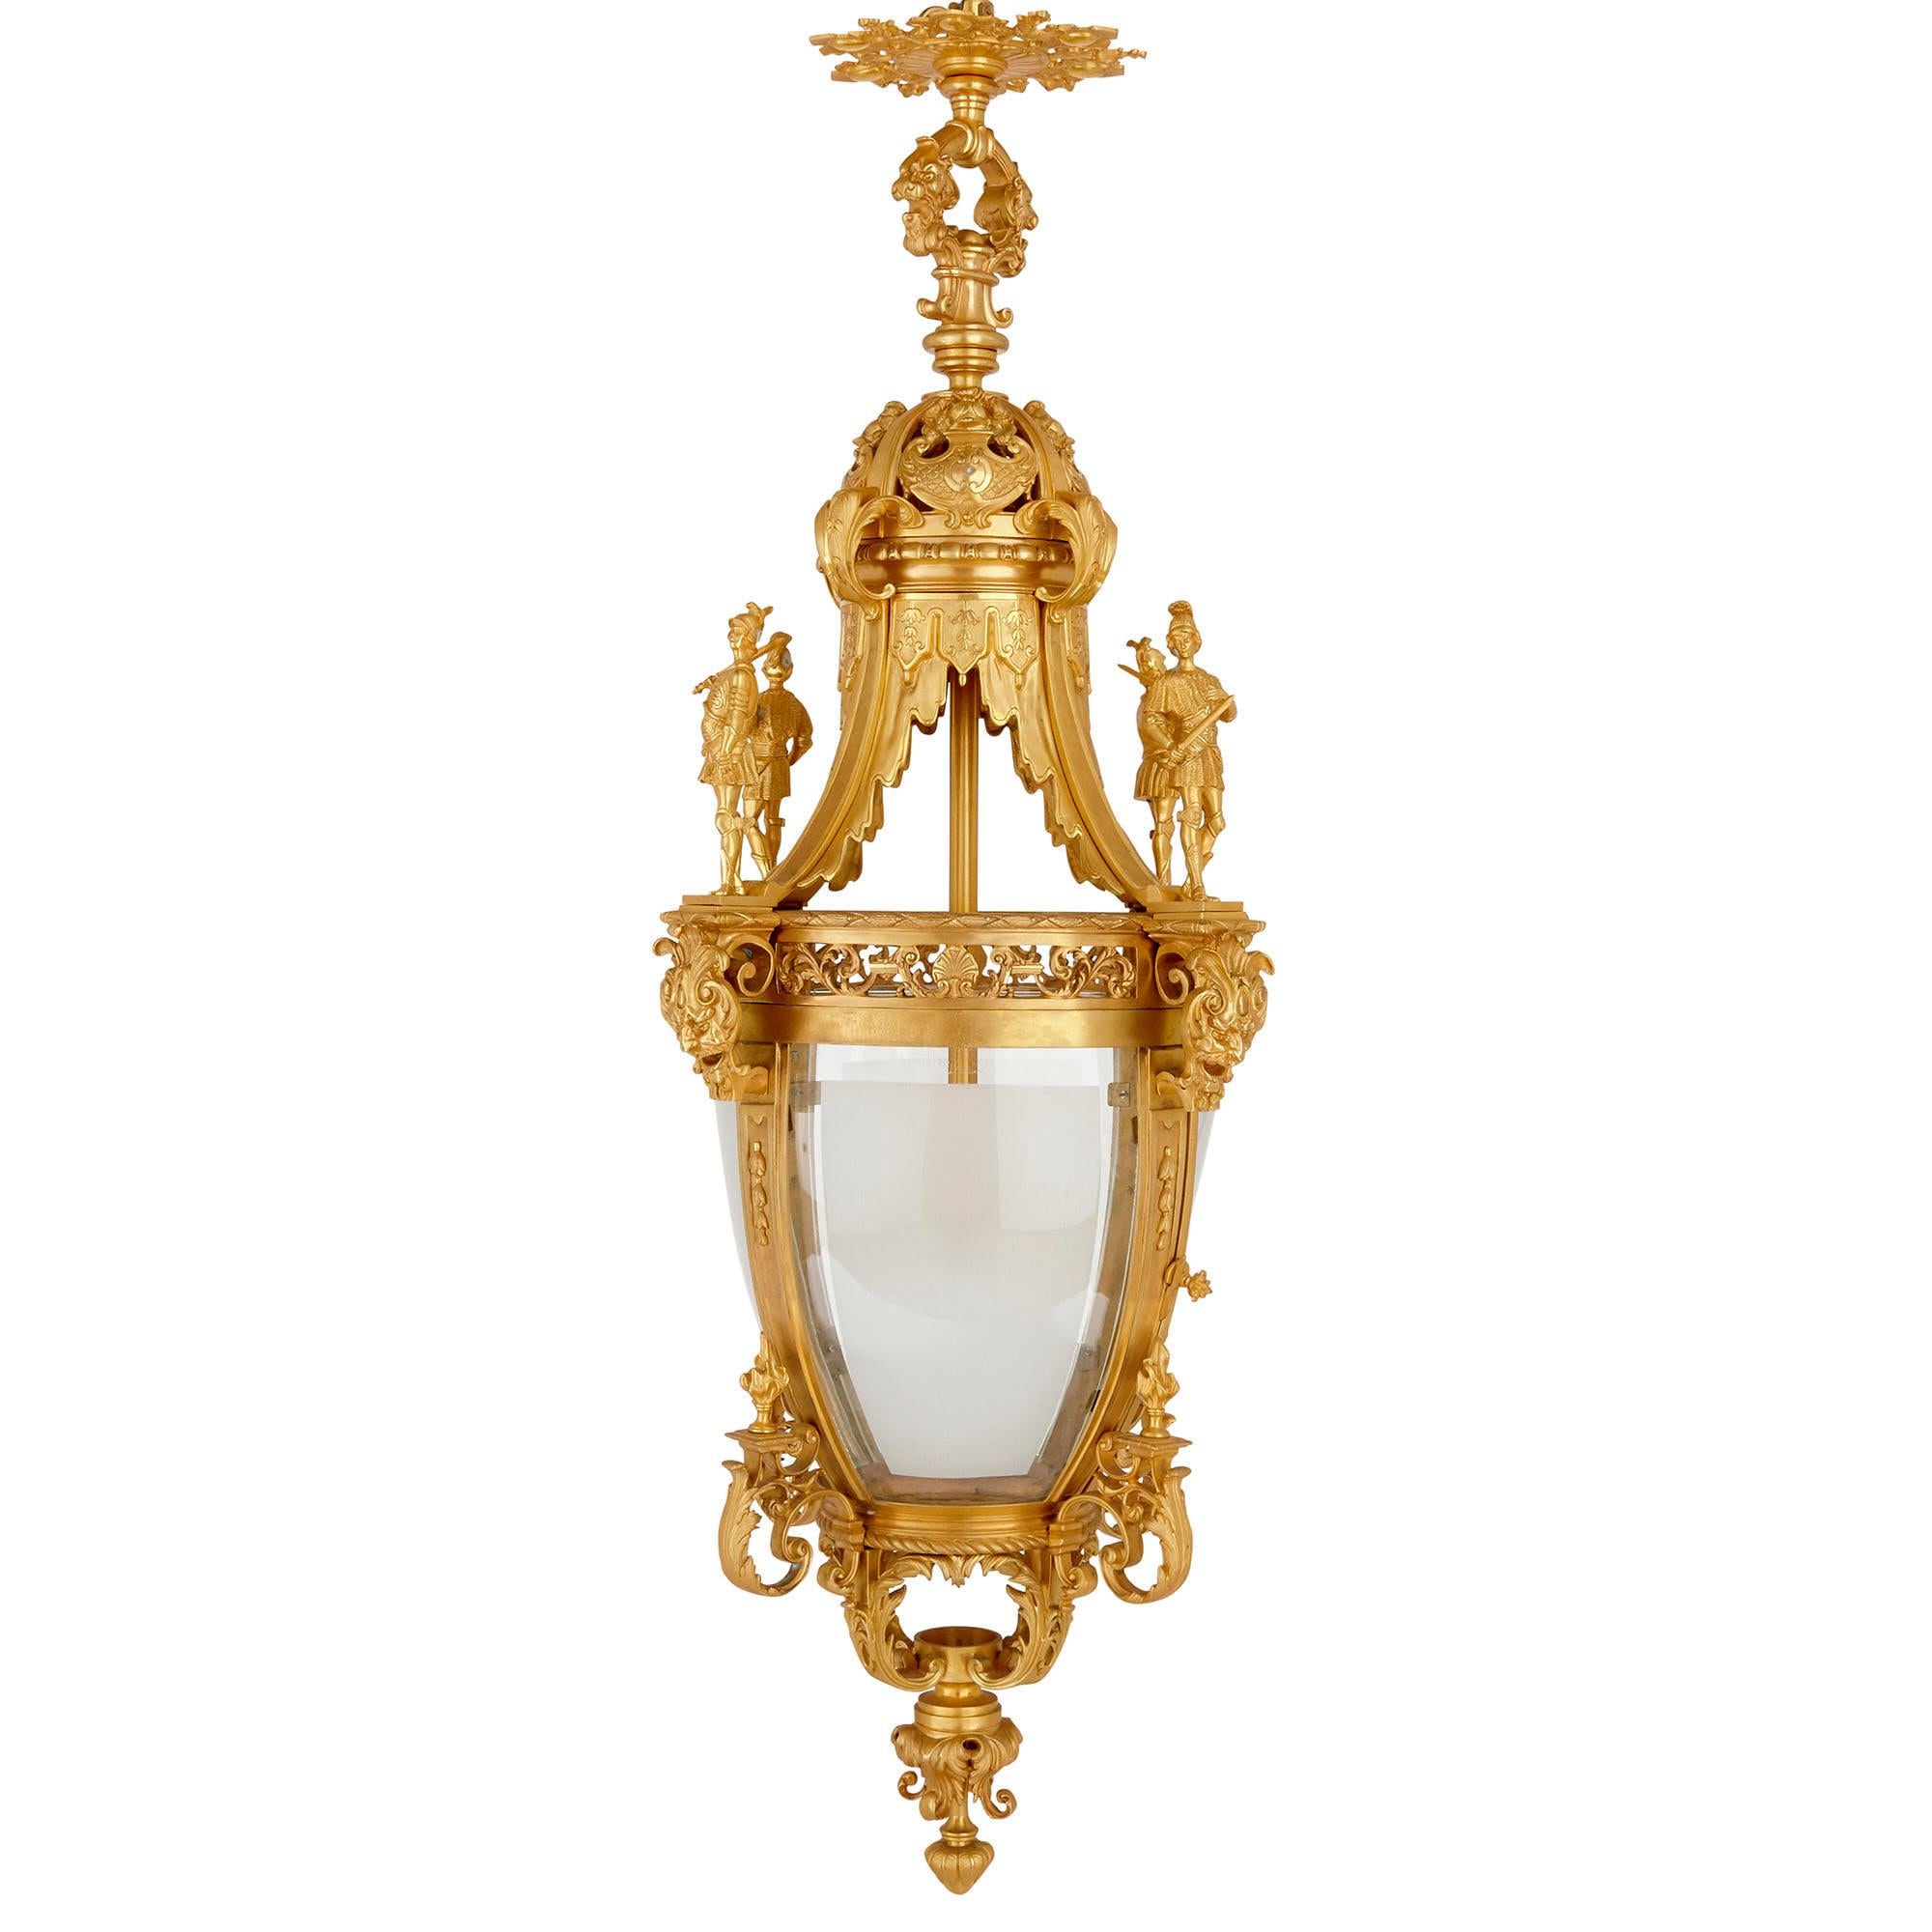 Très grande lanterne de style Louis XV en bronze doré
Français, 20ème siècle
Dimensions : Hauteur 160cm, diamètre 62cm

Cette magnifique lanterne est fabriquée en bronze doré dans un style décoratif merveilleusement orné. La lanterne comporte un